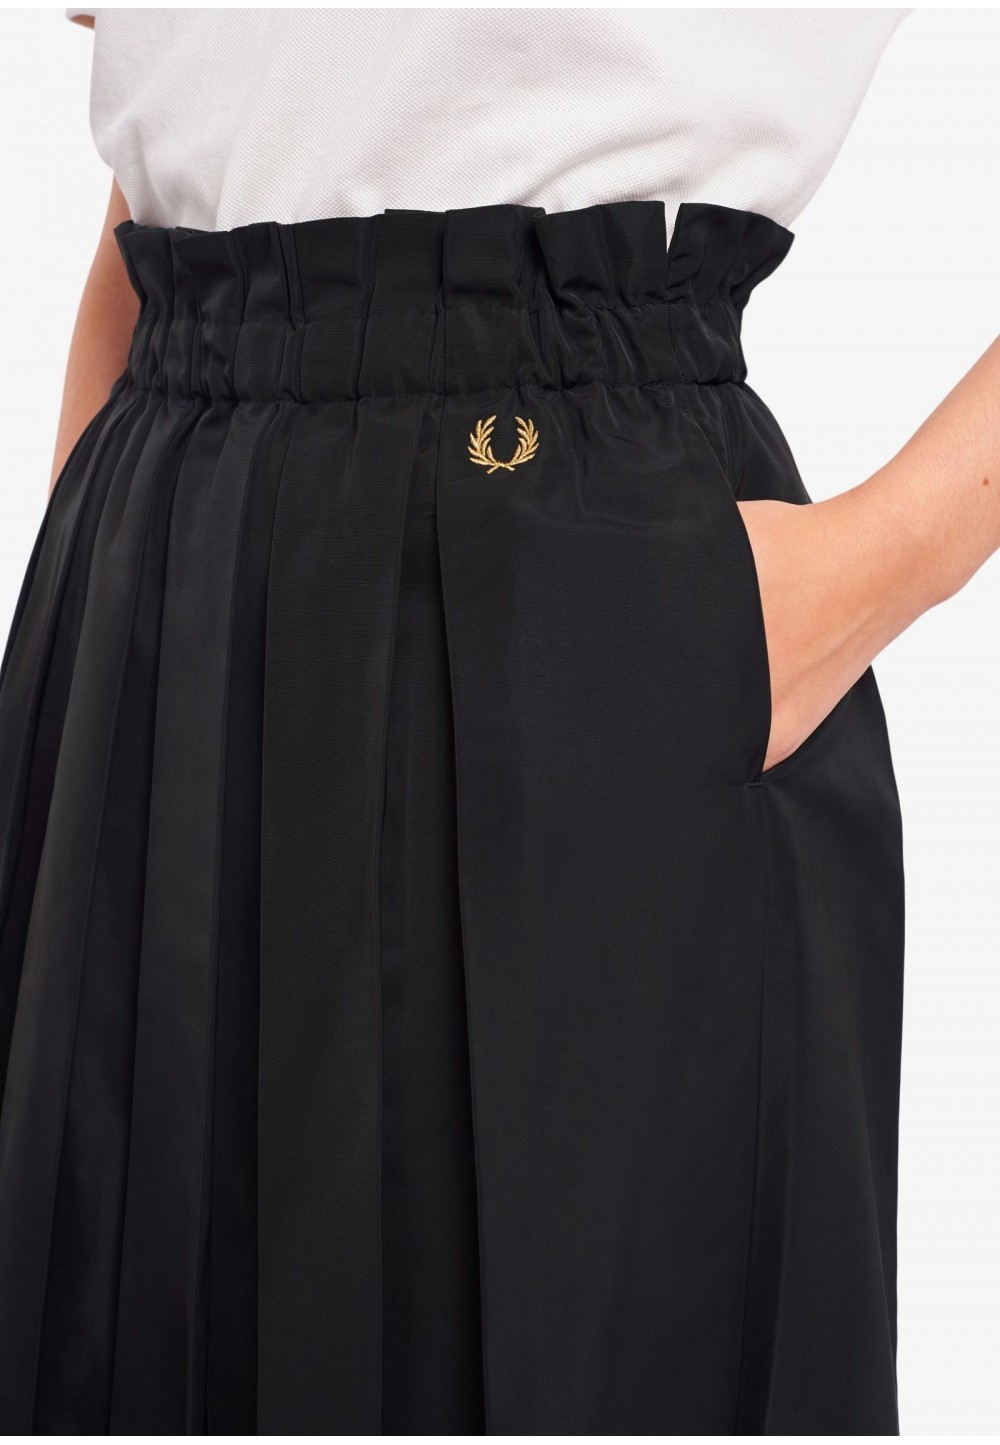 Плиссированная юбка с вышивкой логотипа